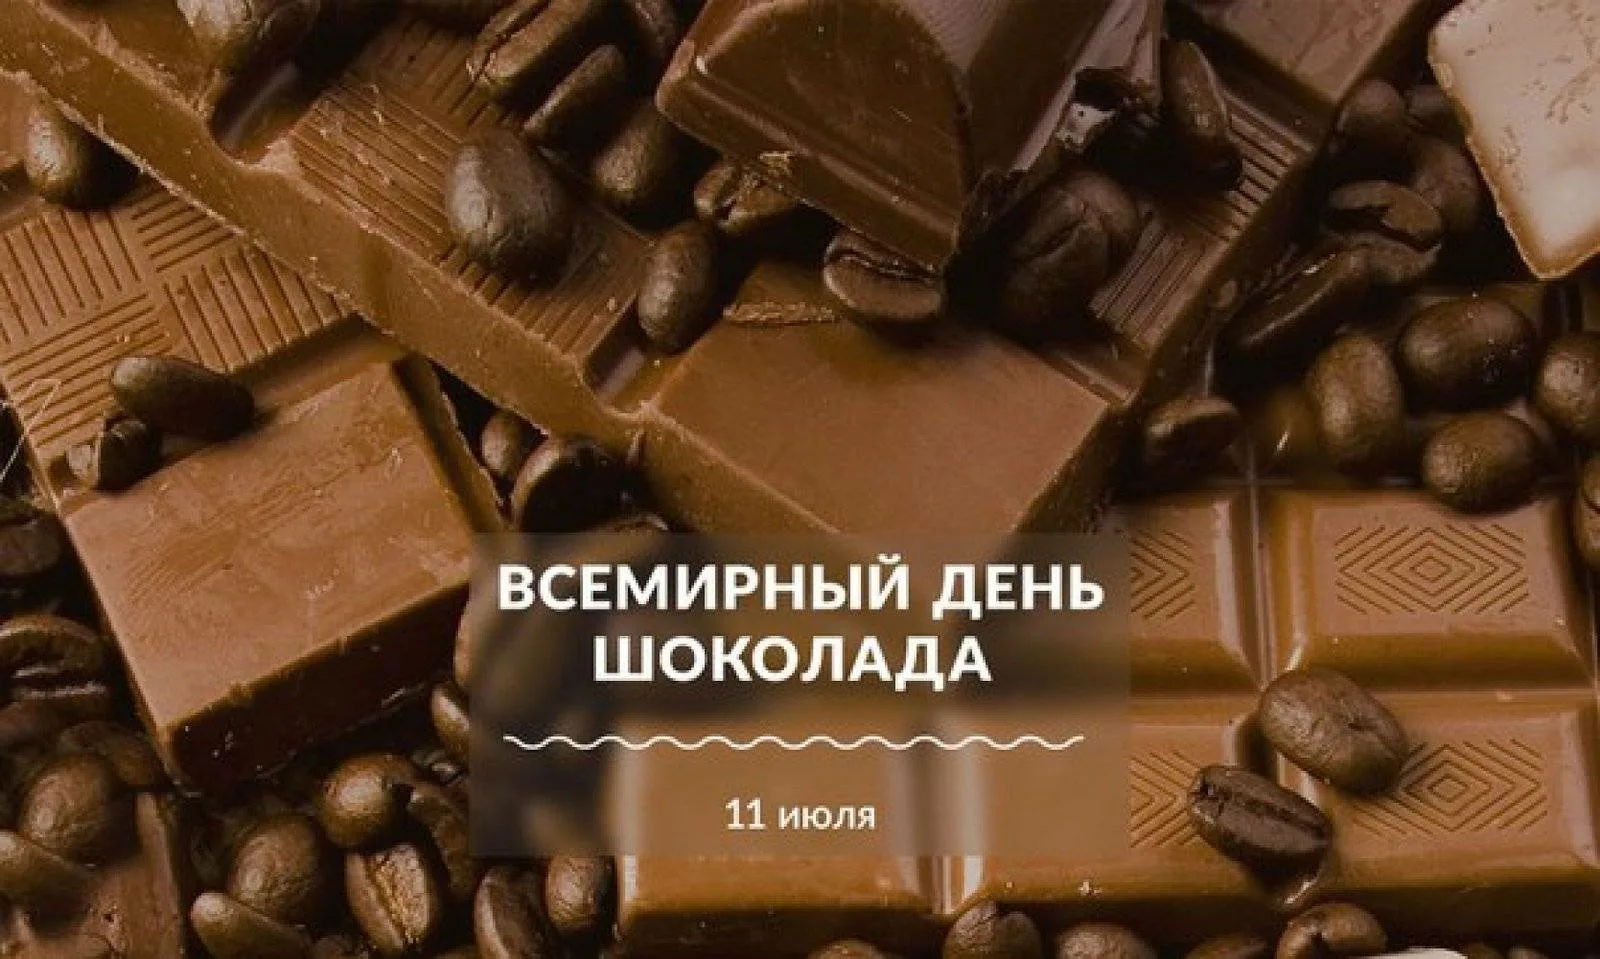 Всемирный день шоколада. Всемирный день шоколада 11 июля. 11 Июля день шоколада. 11 Июля шоколад. День шоколада купить